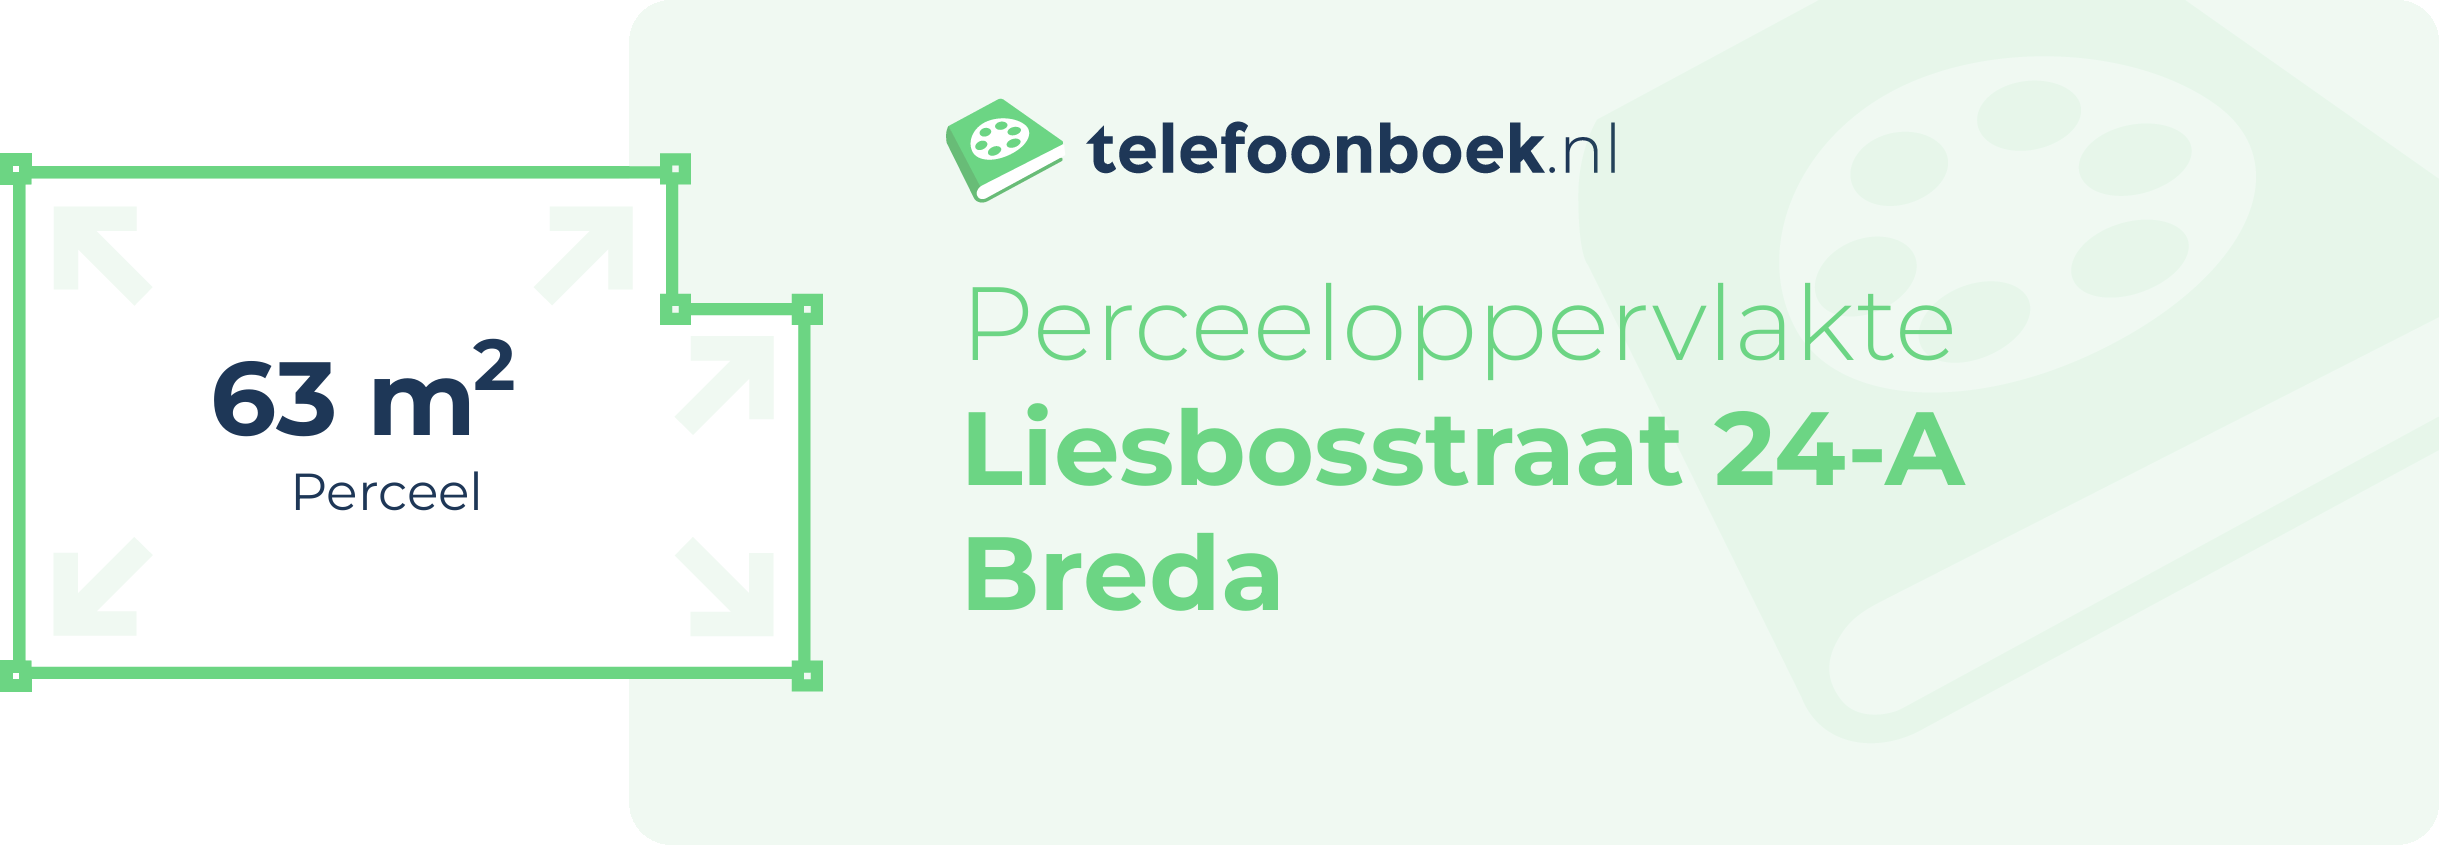 Perceeloppervlakte Liesbosstraat 24-A Breda